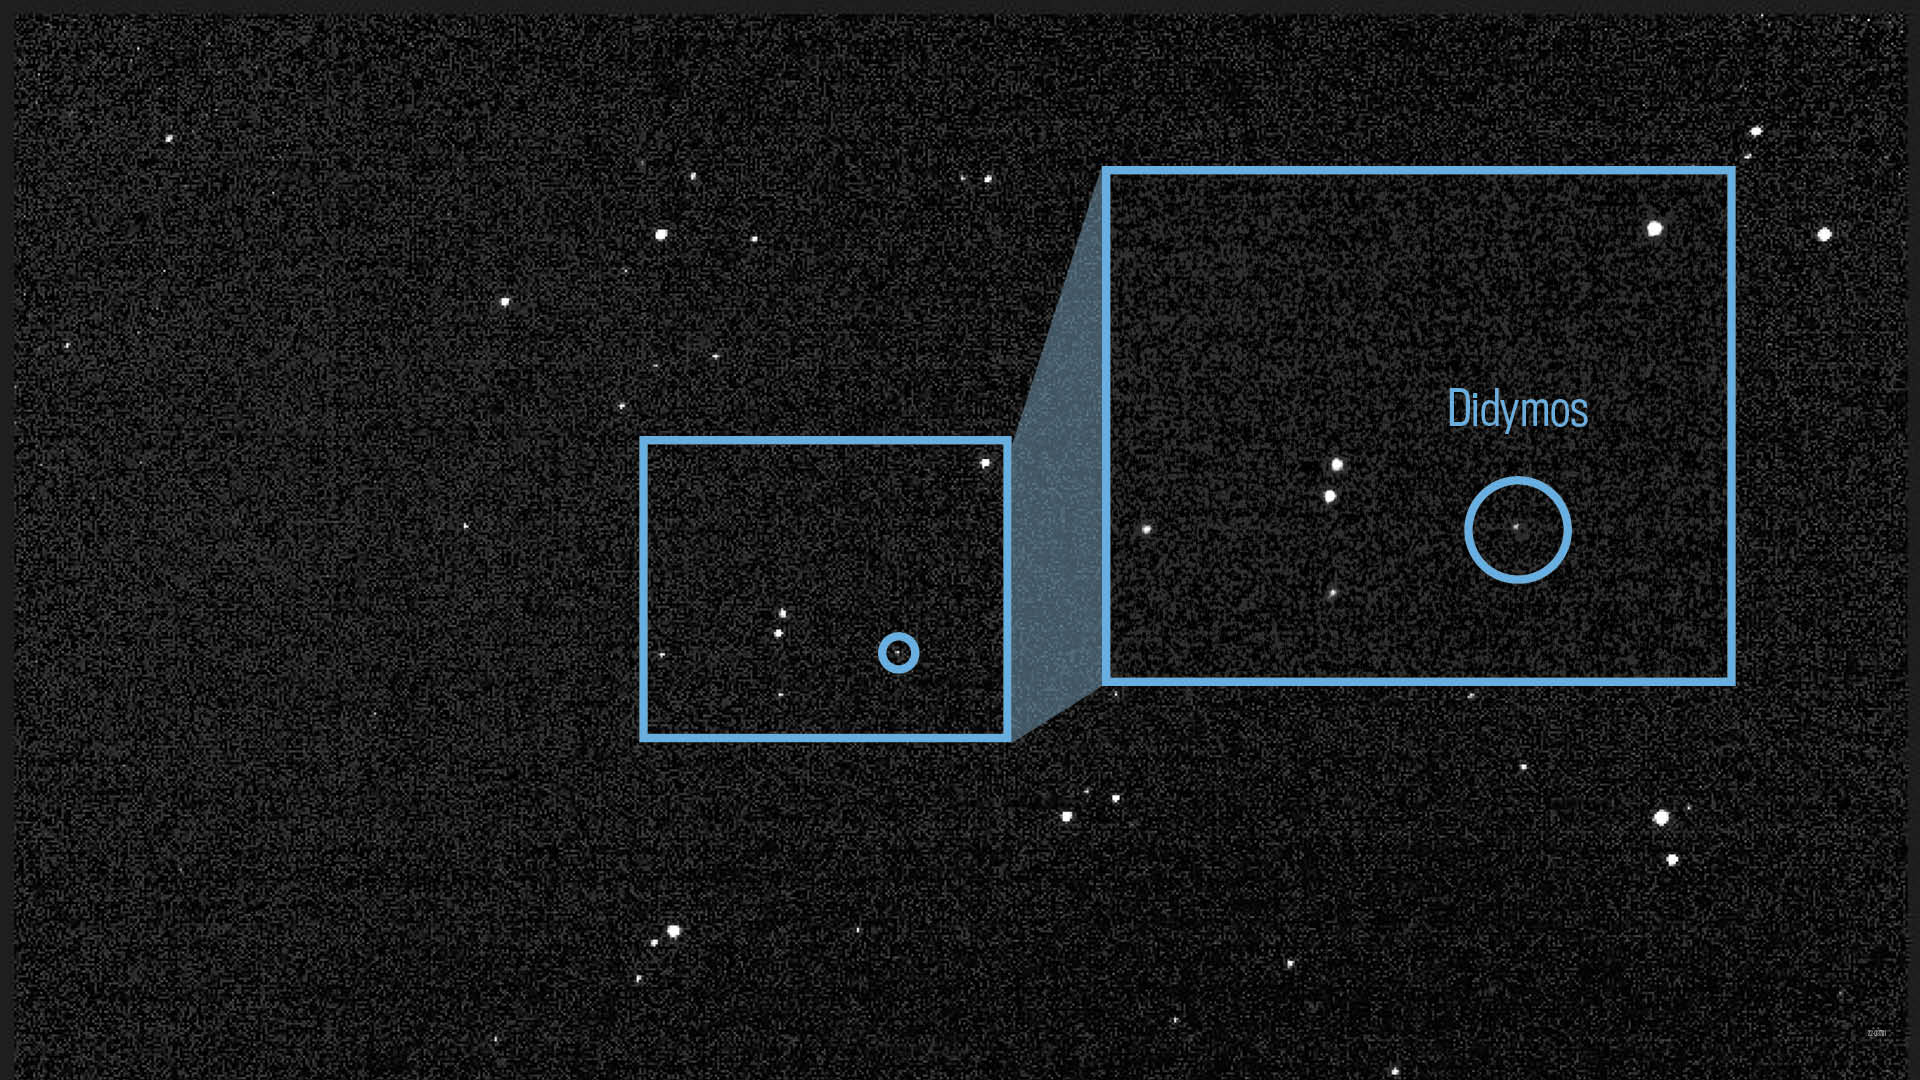 Две белые светящиеся точки кружатся в нечетком звездном поле. Чуть более крупная светящаяся точка в крайнем правом углу изображения помечена как Didymos.